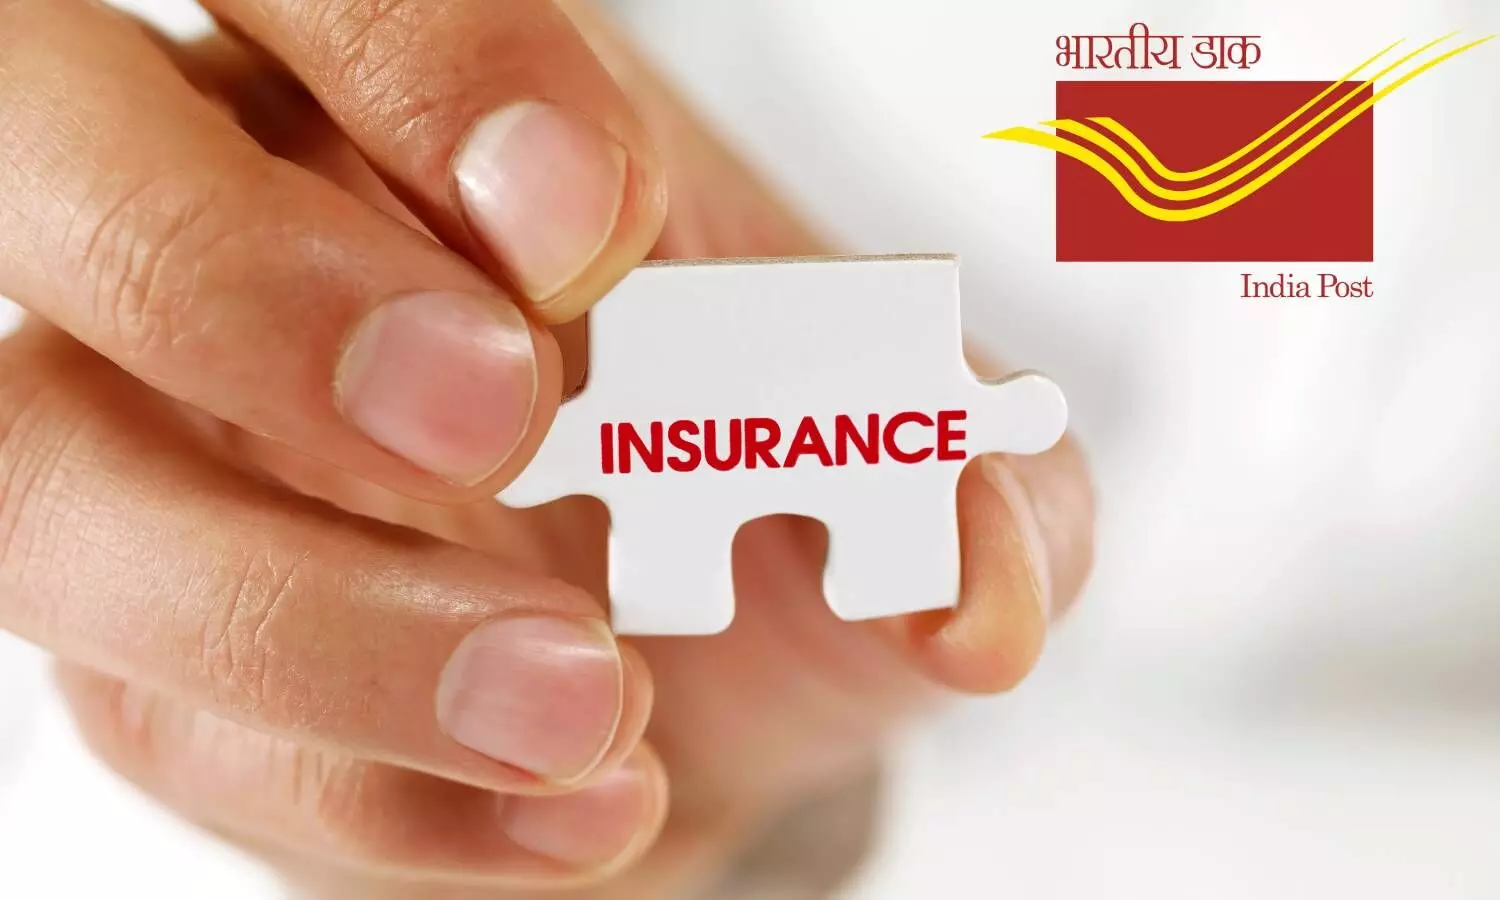 Insurance visual and India post logo